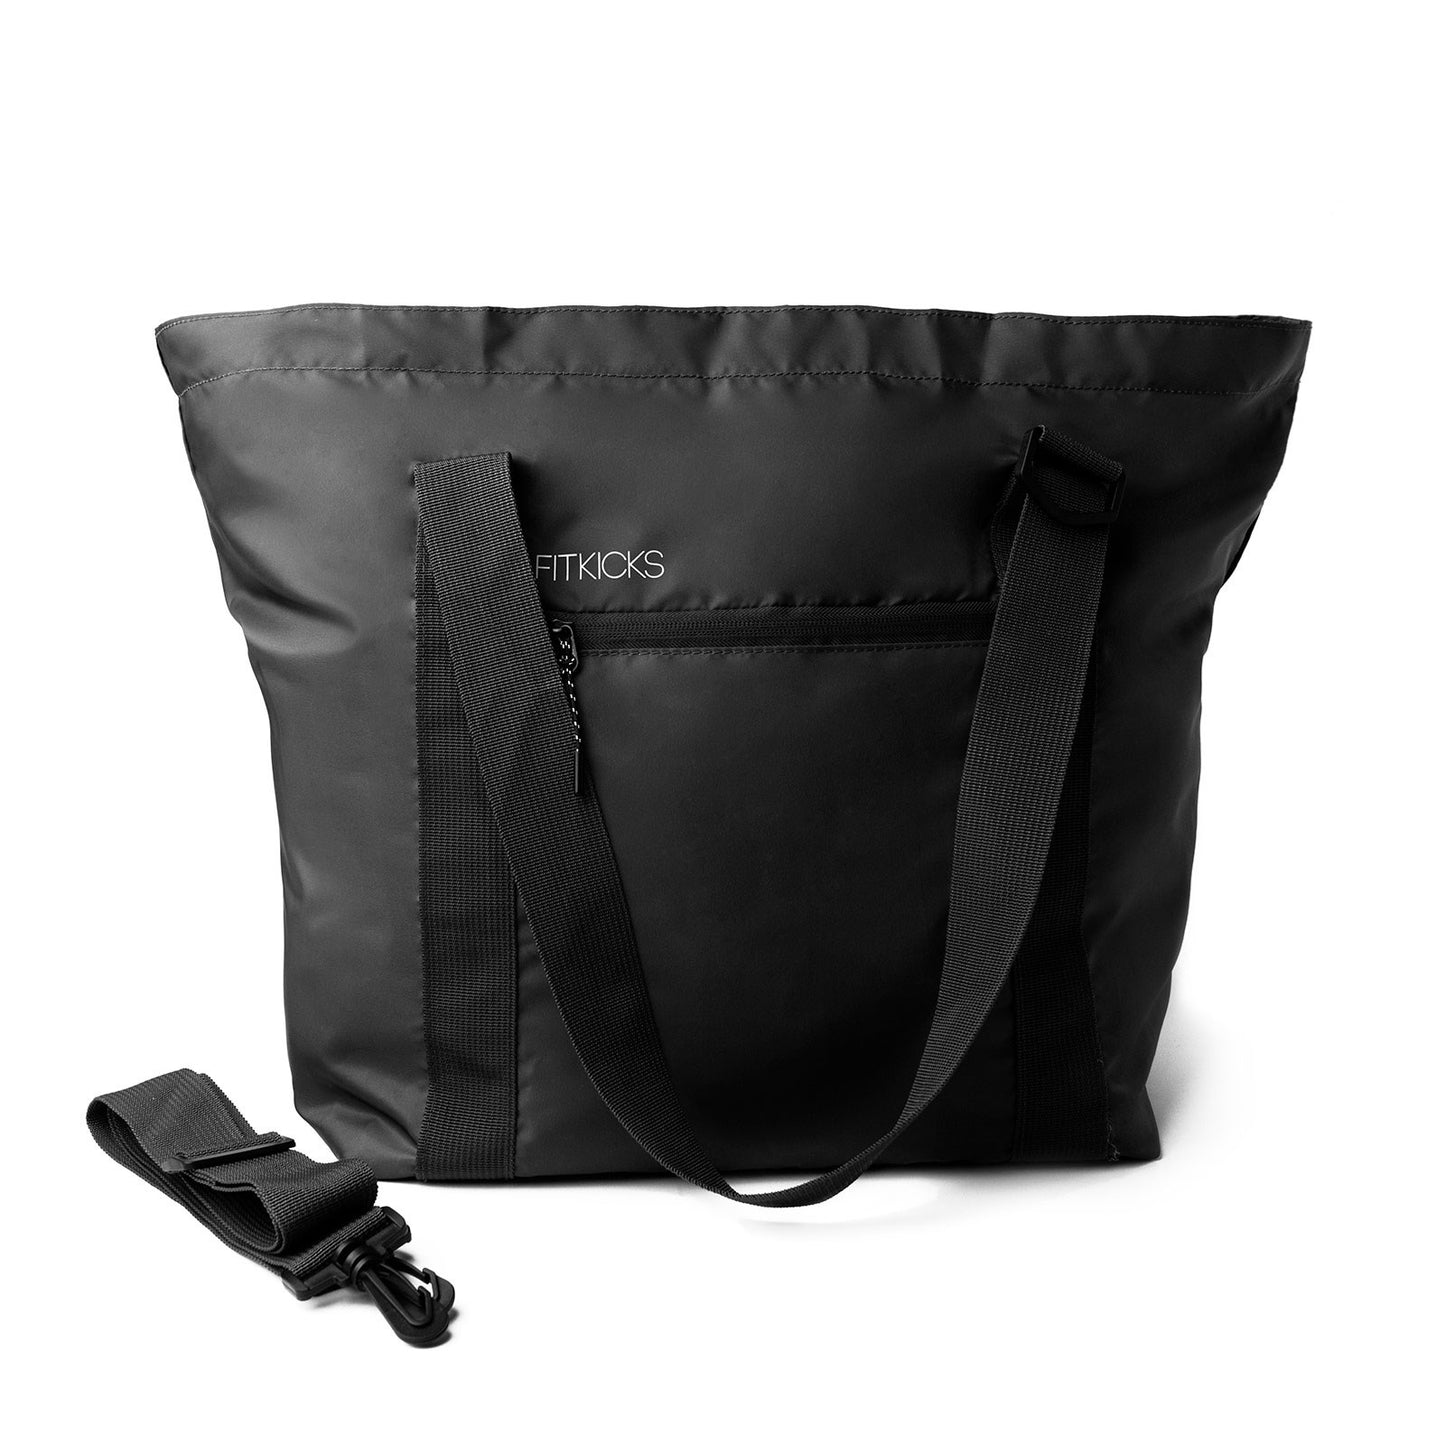 Fitkicks Hideaway Packable Tote Bag